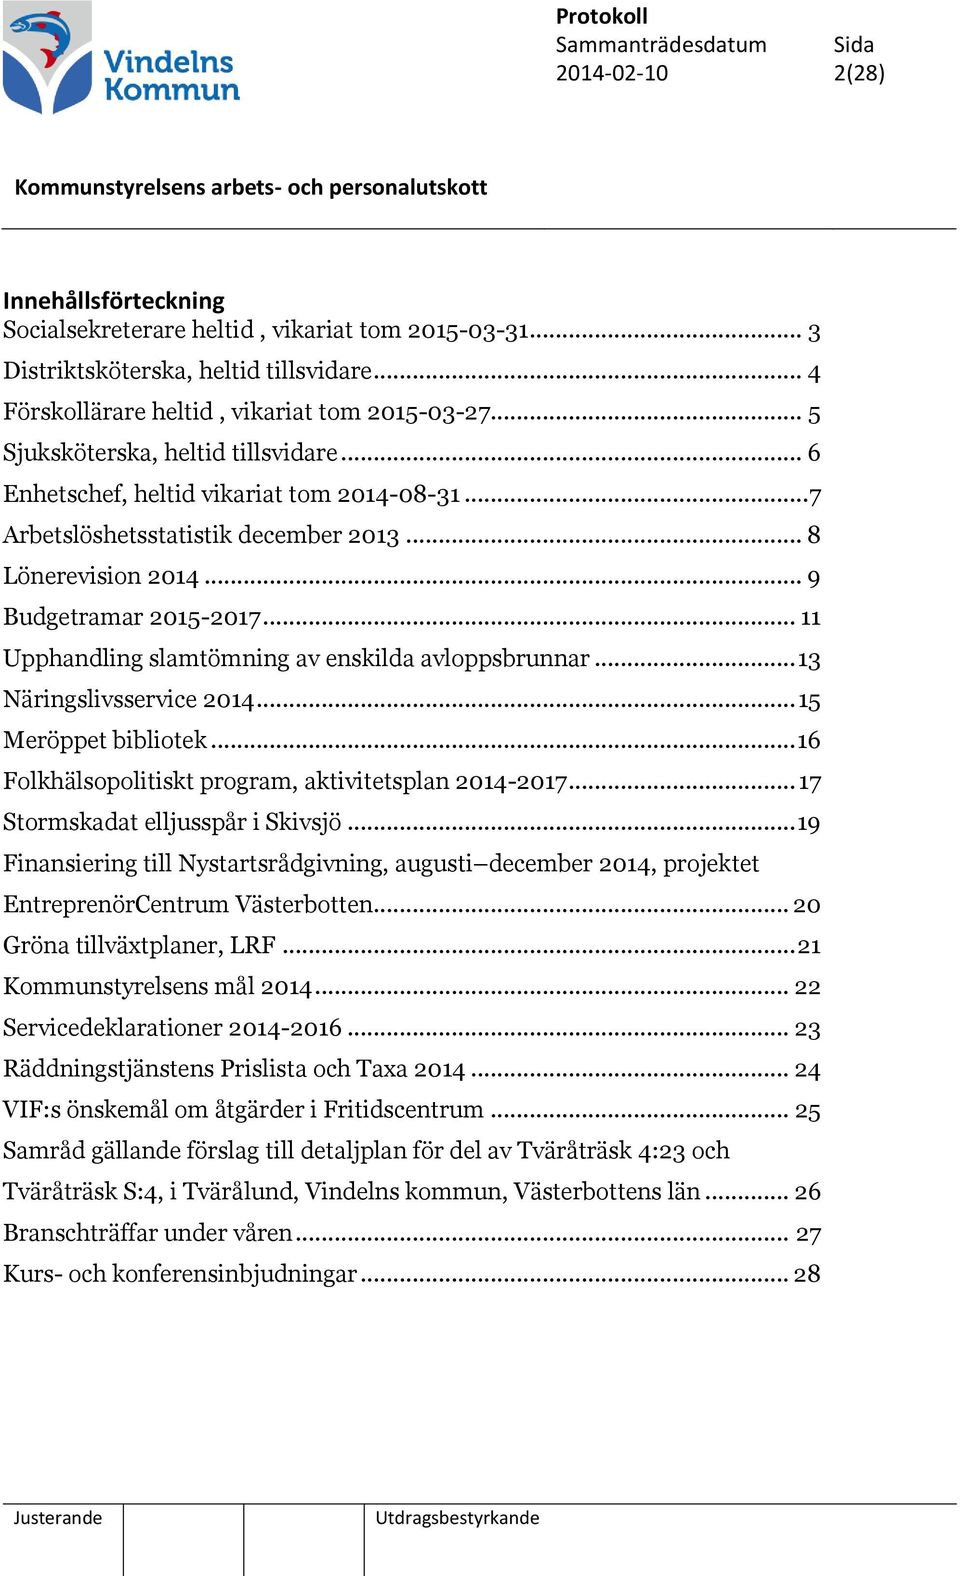 .. 11 Upphandling slamtömning av enskilda avloppsbrunnar... 13 Näringslivsservice 2014... 15 Meröppet bibliotek... 16 Folkhälsopolitiskt program, aktivitetsplan 2014-2017.